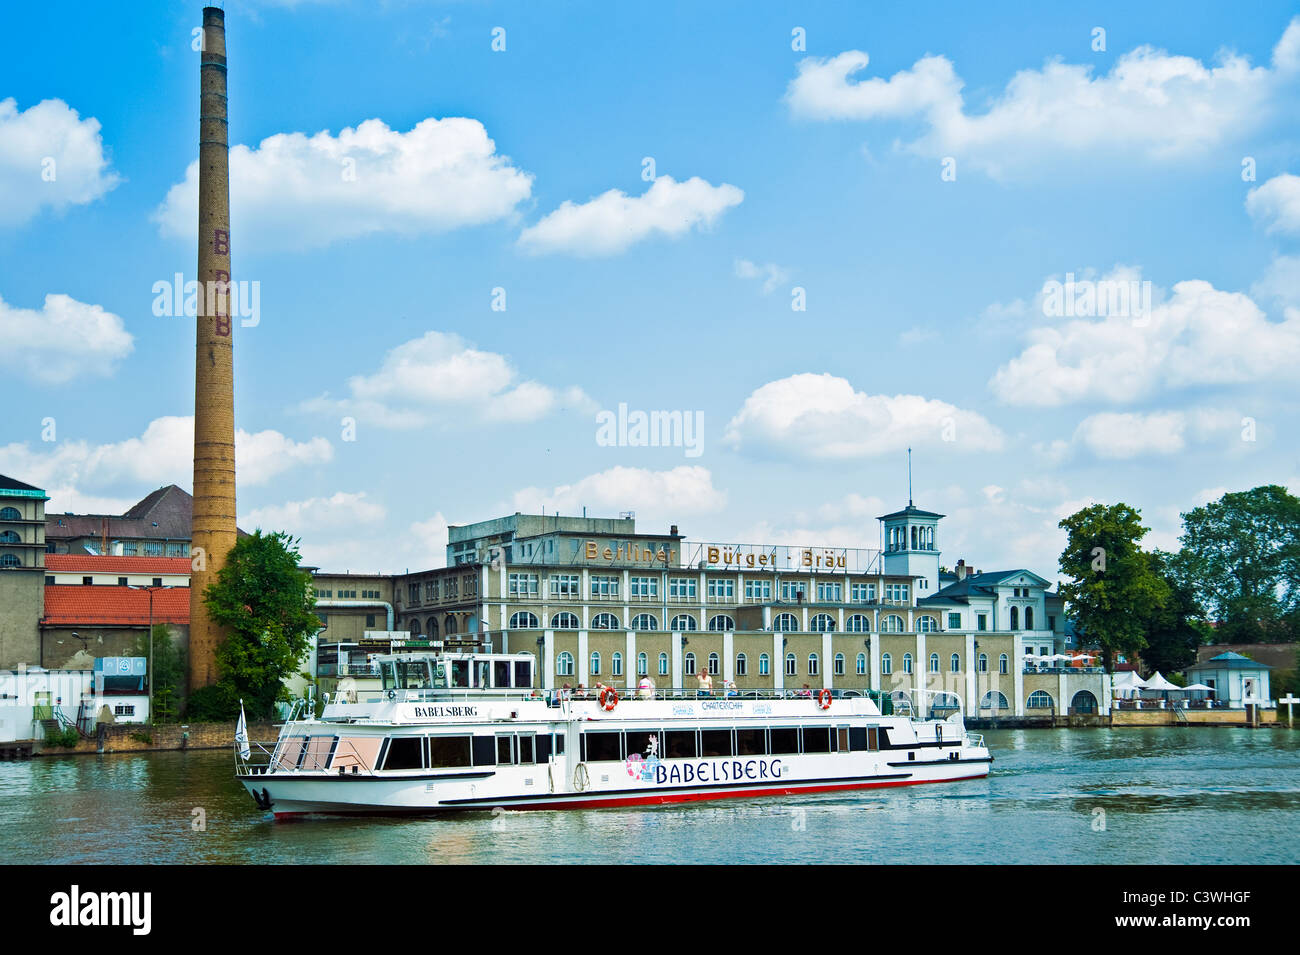 Tourist boat on River Spree in front of Berliner Buerger Braeu, Friedrichshagen, Berlin, Germany Stock Photo